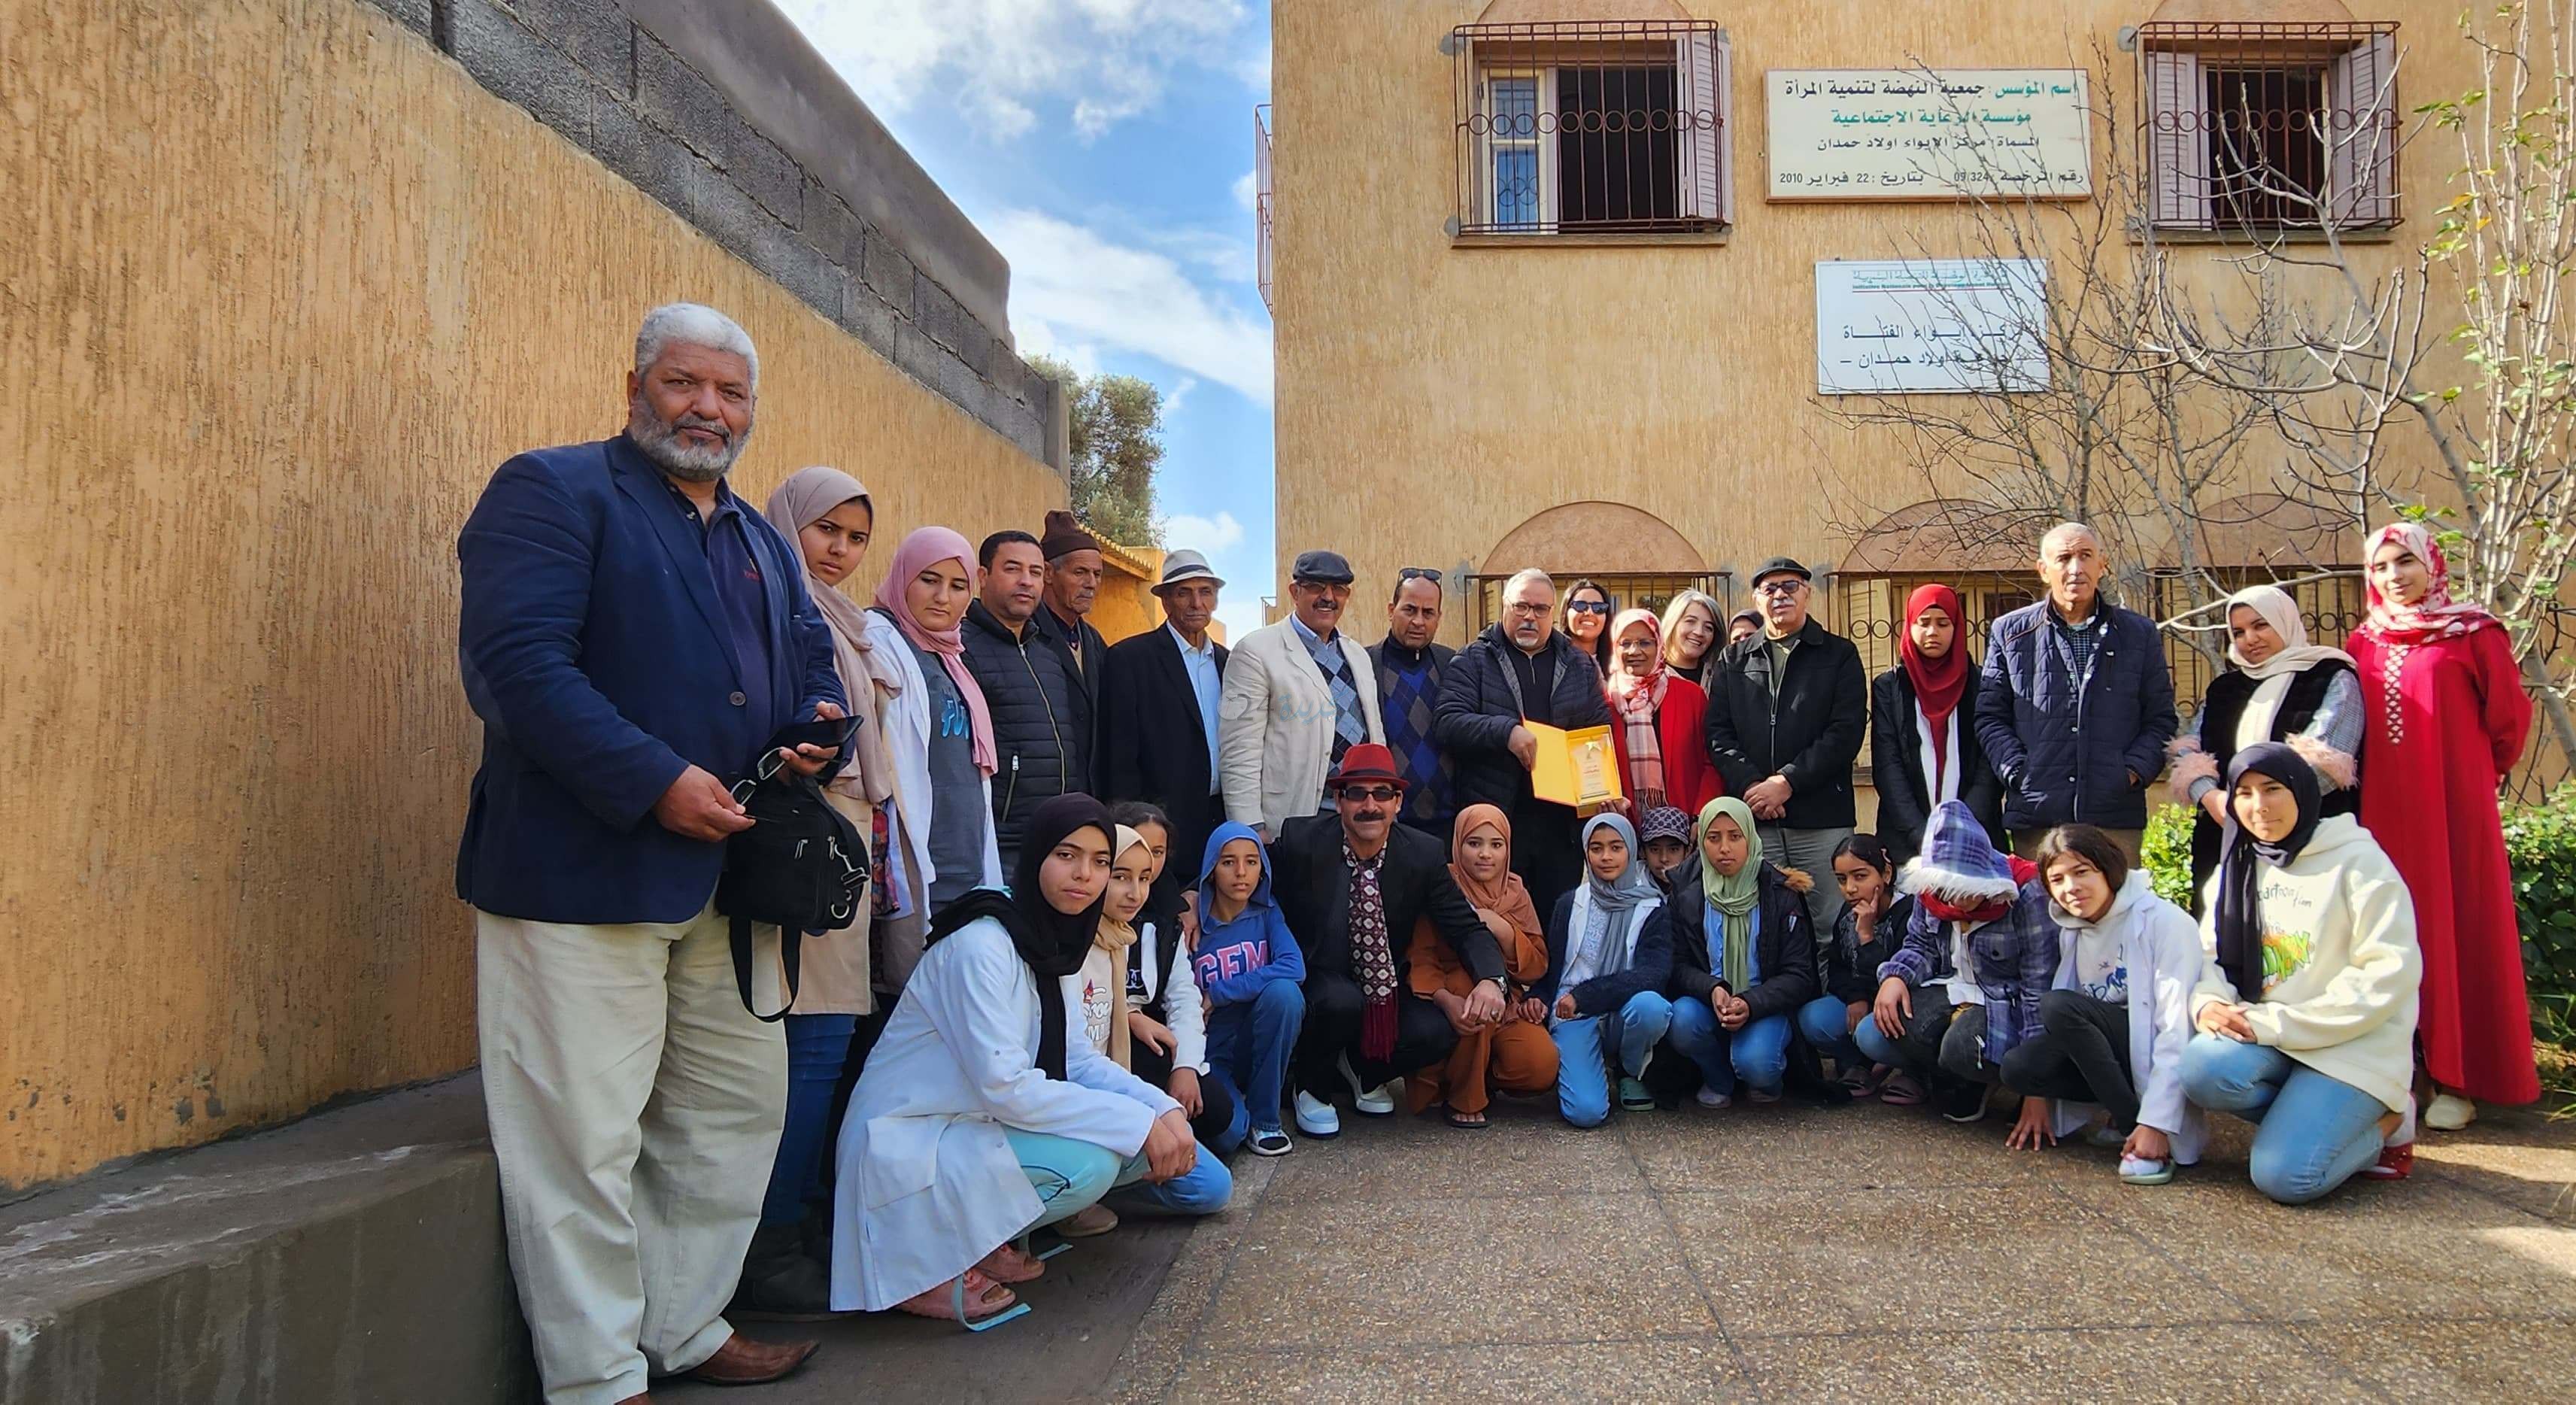 جمعية الصحافة بالجديدة  APEJ في  زيارة لمقر جمعية النهضة لتنمية المرأة بأولاد حمدان